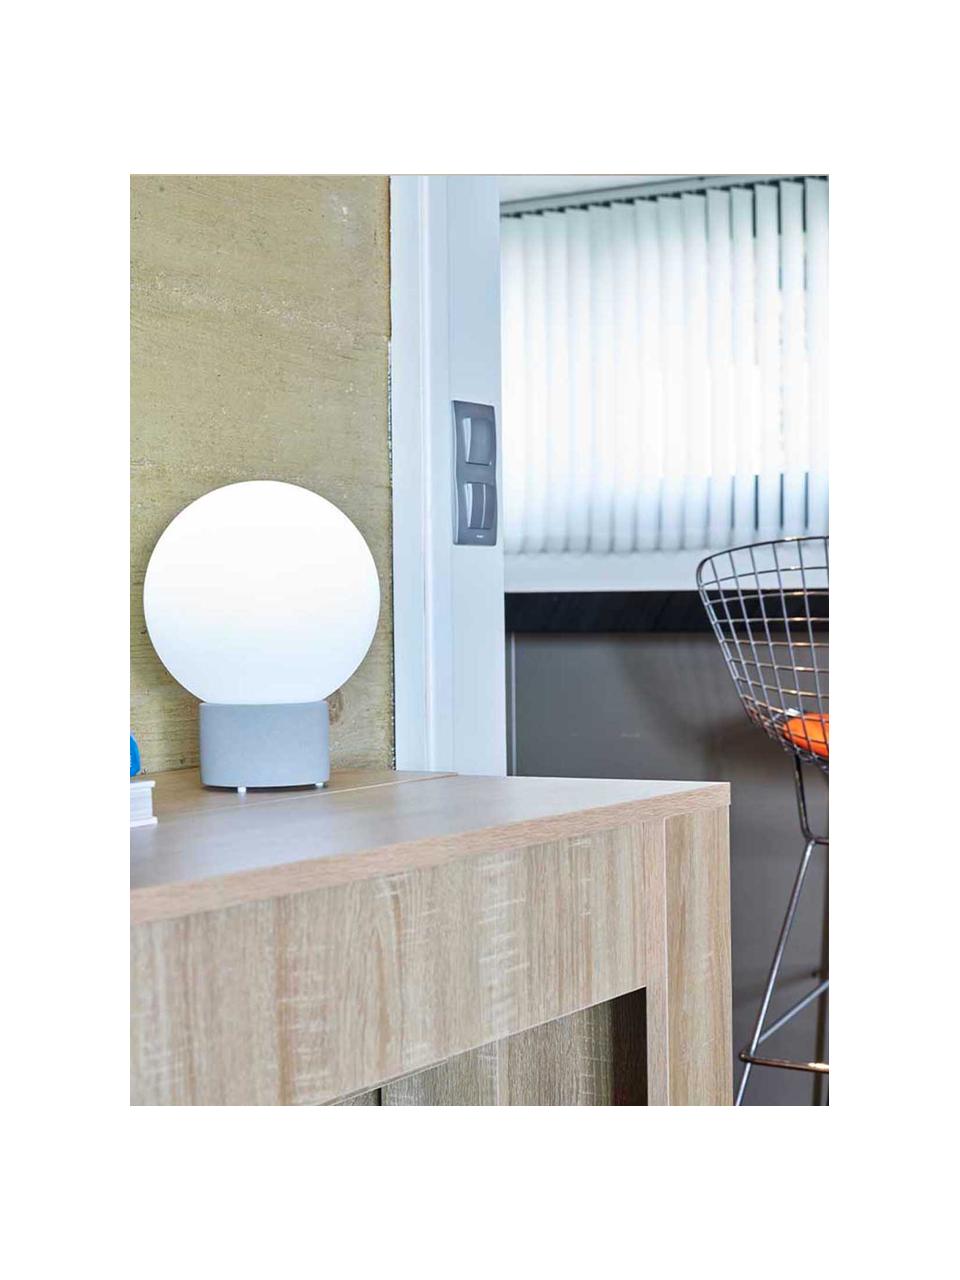 Mobile Dimmbare Außentischlampe Terra mit Touchfunktion, Lampenschirm: Polyethylen, Lampenfuß: Terrakotta, Weiß, Grau, Ø 20 x H 25 cm